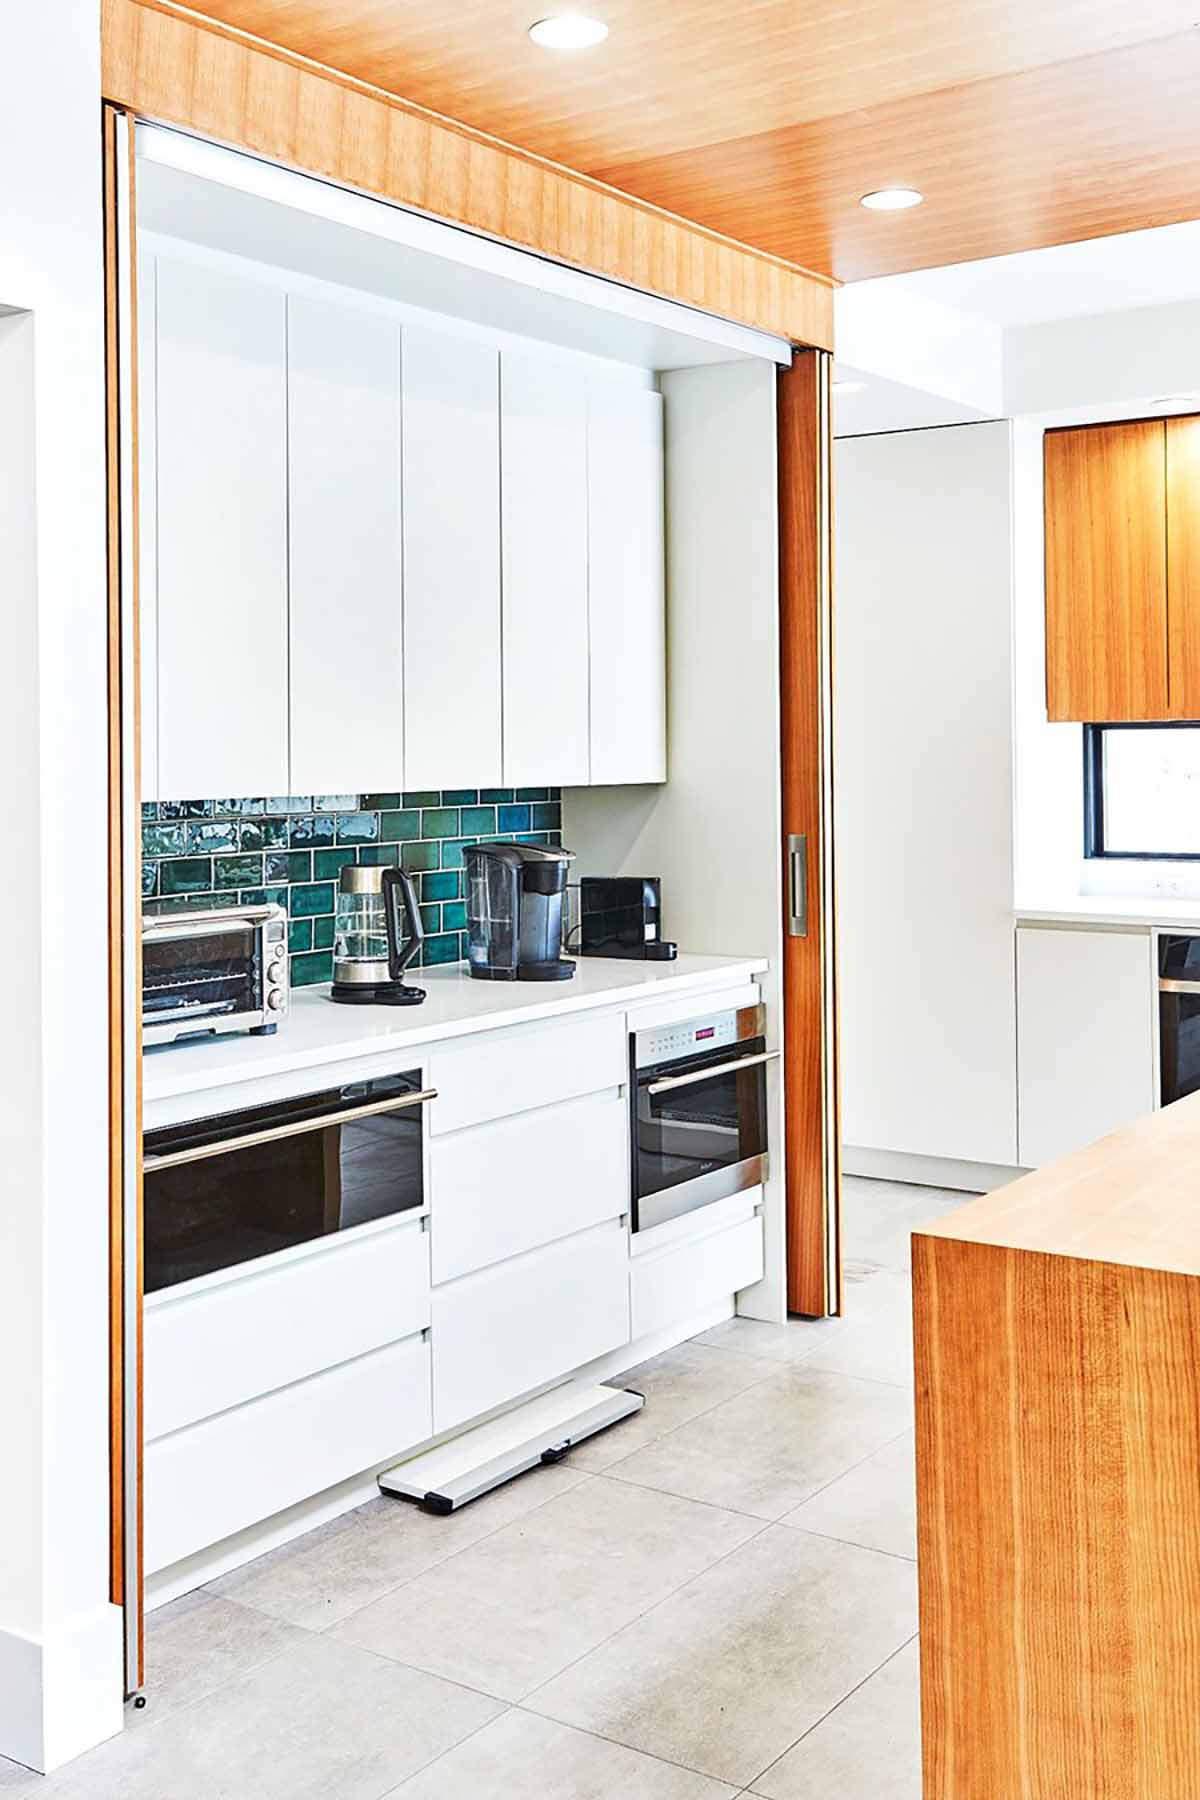 Thiết kế tủ bếp với không gian thiết kế thông minh.

Nguồn: Raywhite